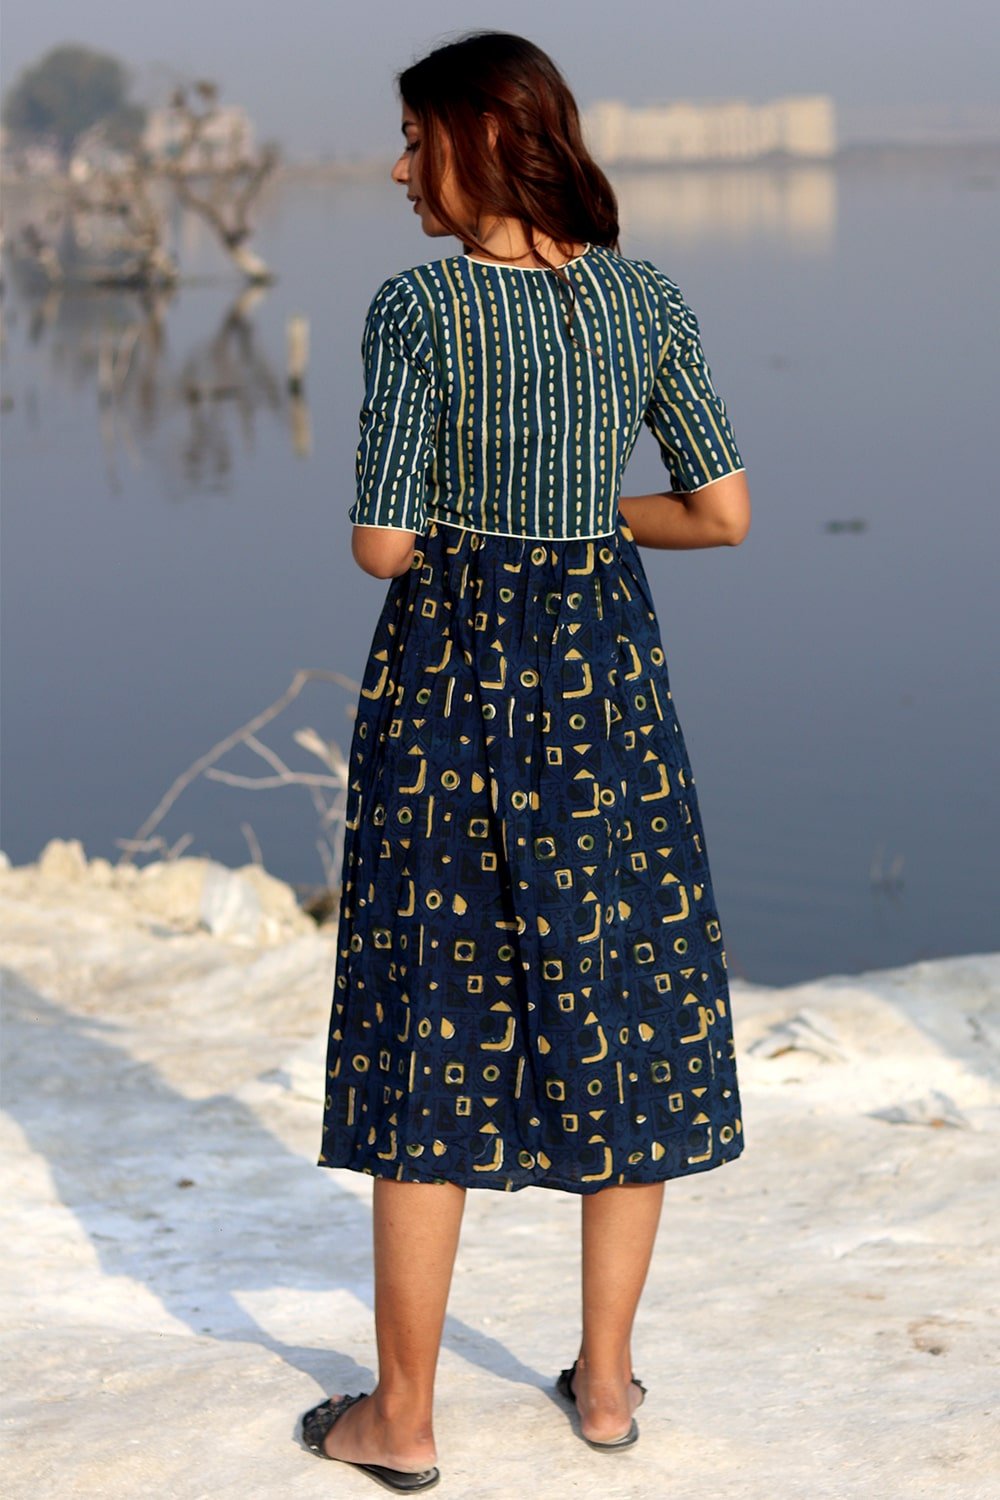 SootiSyahi 'Indigo Fusion' Block Printed Cotton Dress - SootiSyahi